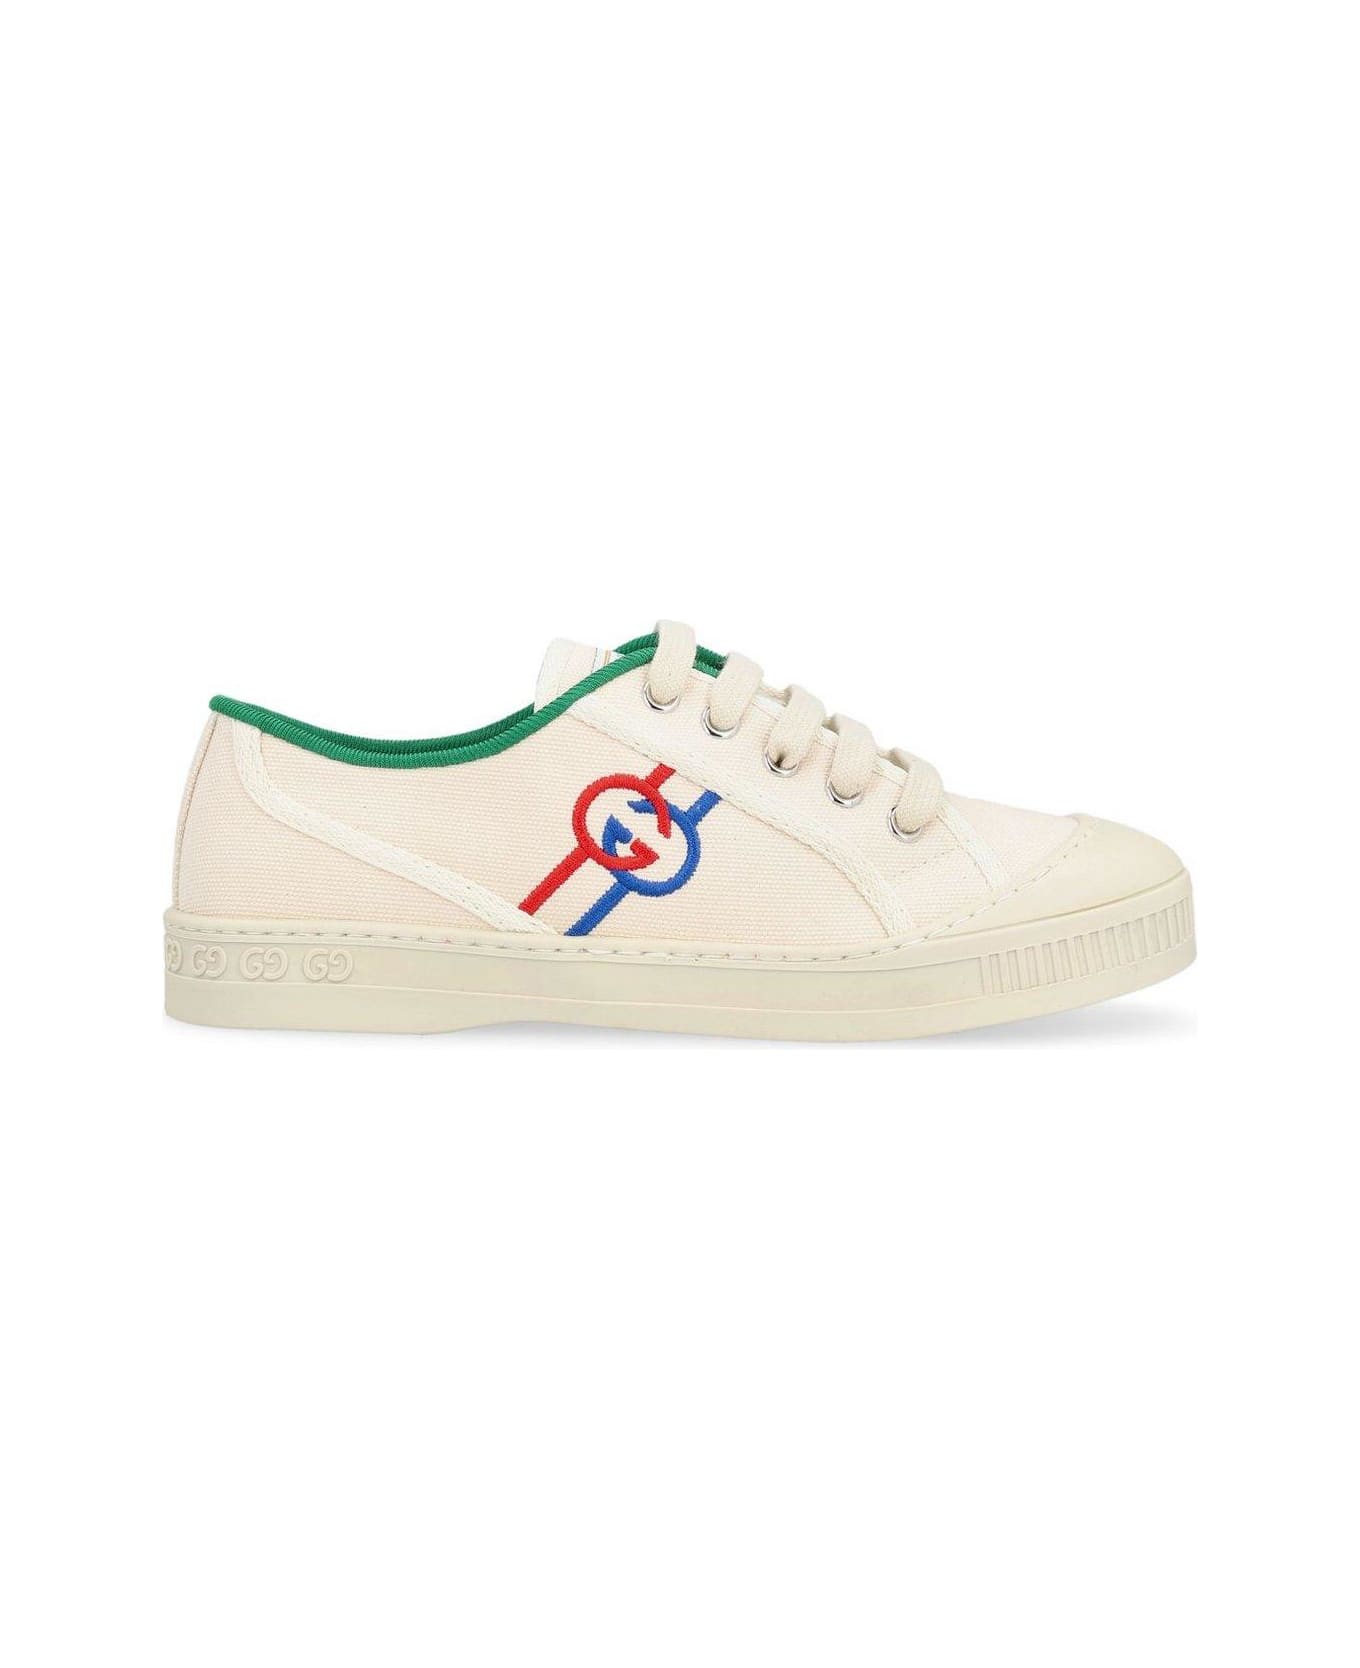 Gucci Tennis 1977 Lace-up Sneakers - Greggio  White